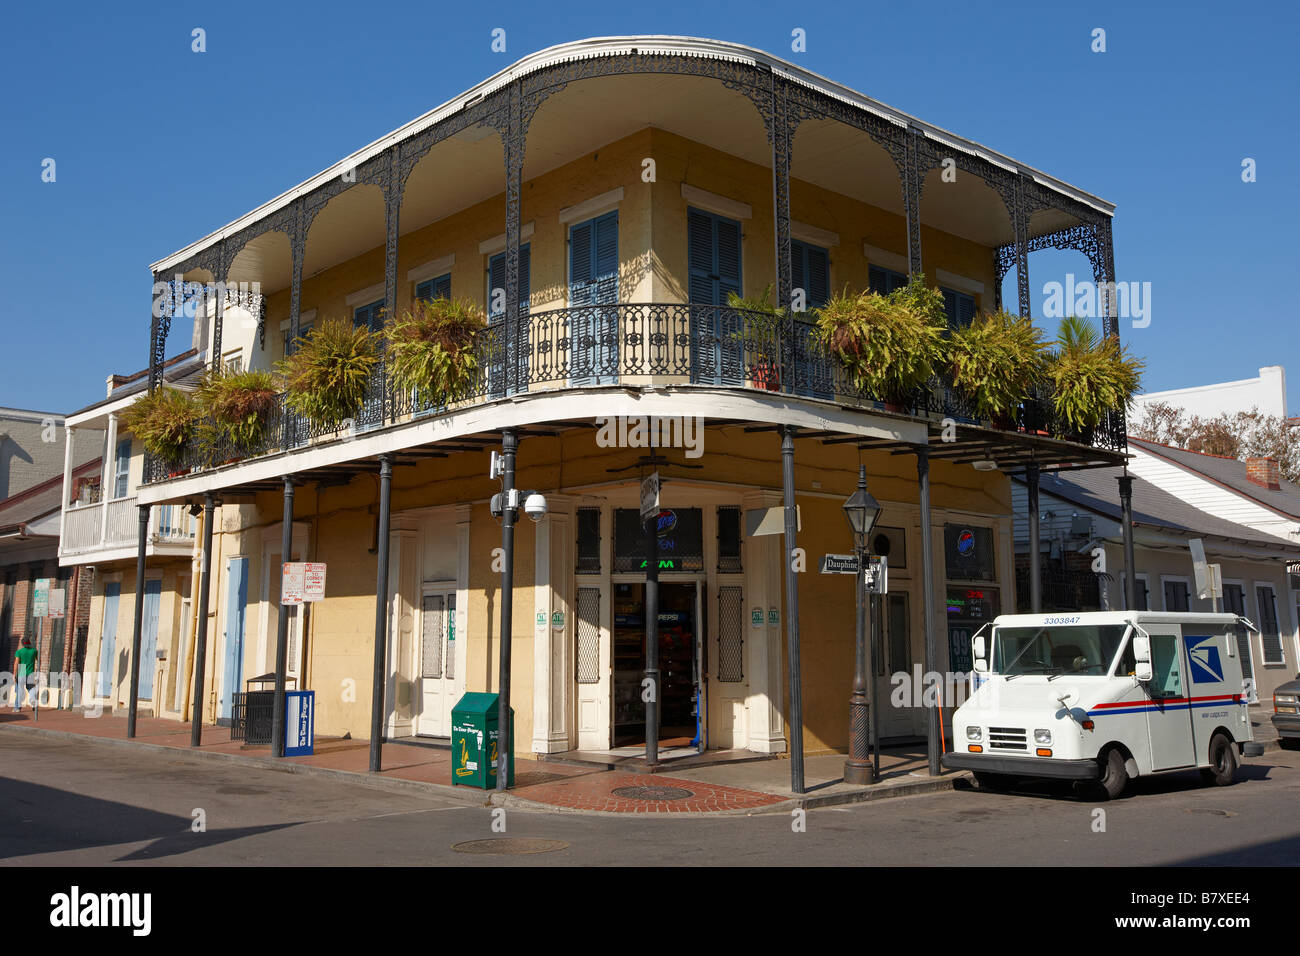 Ancienne maison d'habitation typique dans le quartier français de La Nouvelle-Orléans. Louisiane, Etats-Unis. Banque D'Images